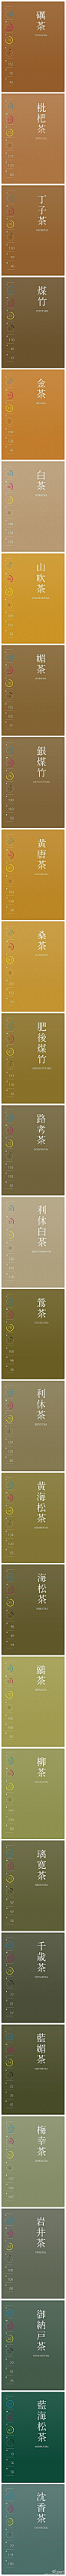 分享一组日本设计师必备设计艺术配色集，超级棒而且相当全面，清楚的标注了RGB色值，完整版，自己收藏~转